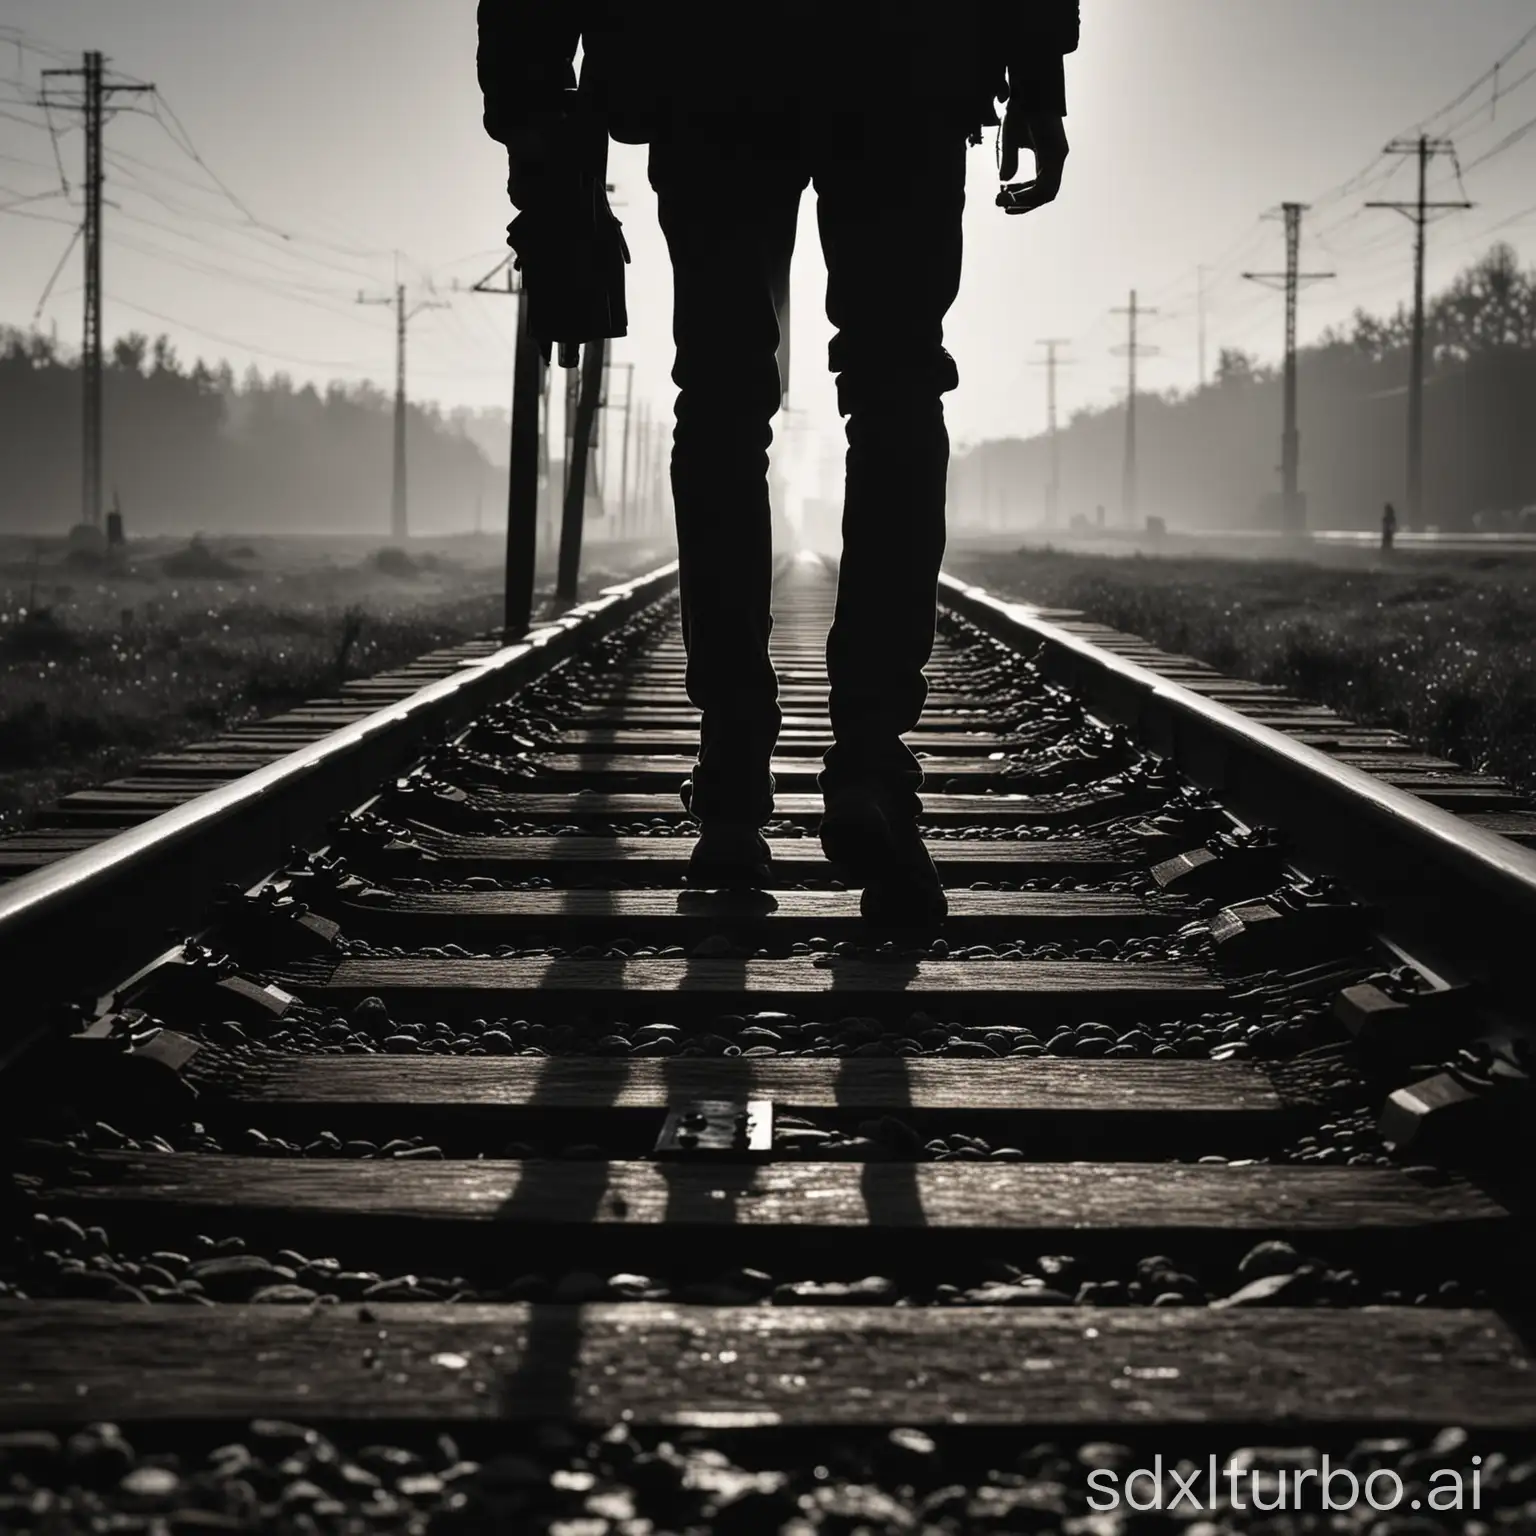 一个人，背影，在铁轨上走，远景透视，孤立构图，